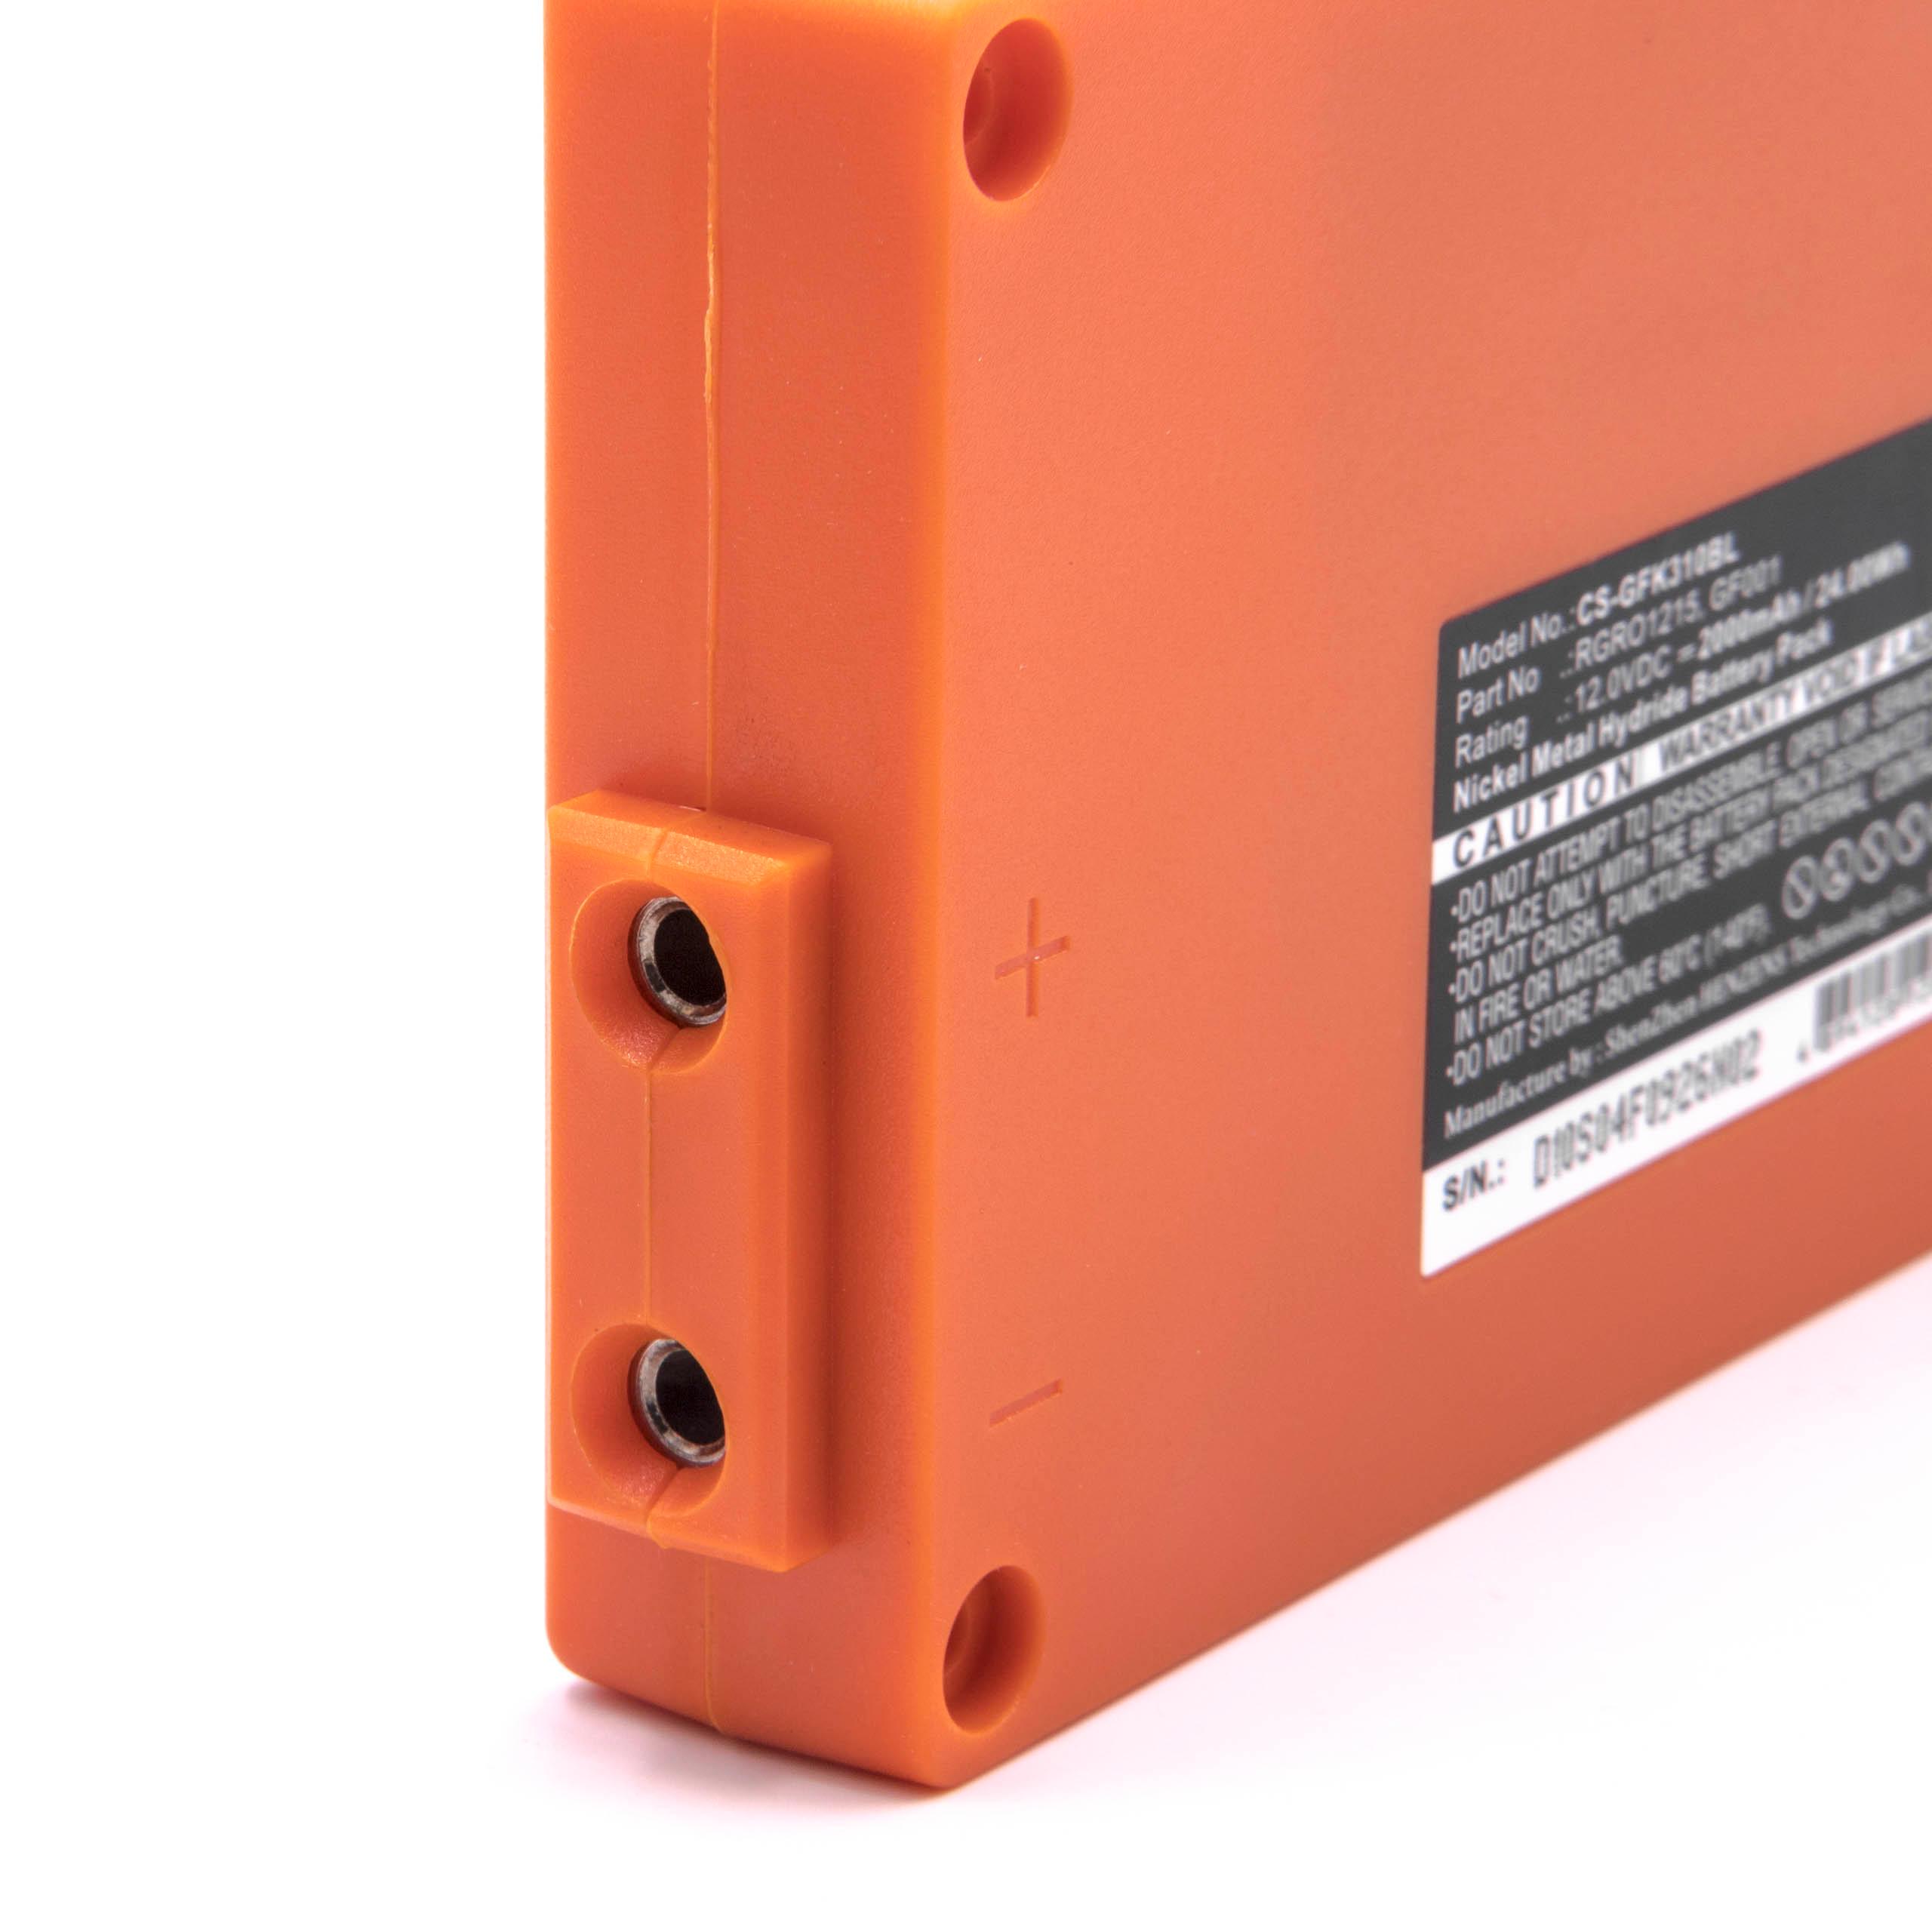 Batterie remplace Gross Funk GF001, 738010957, 100-000-134 pour télécomande industrielle - 2000mAh 12V NiMH